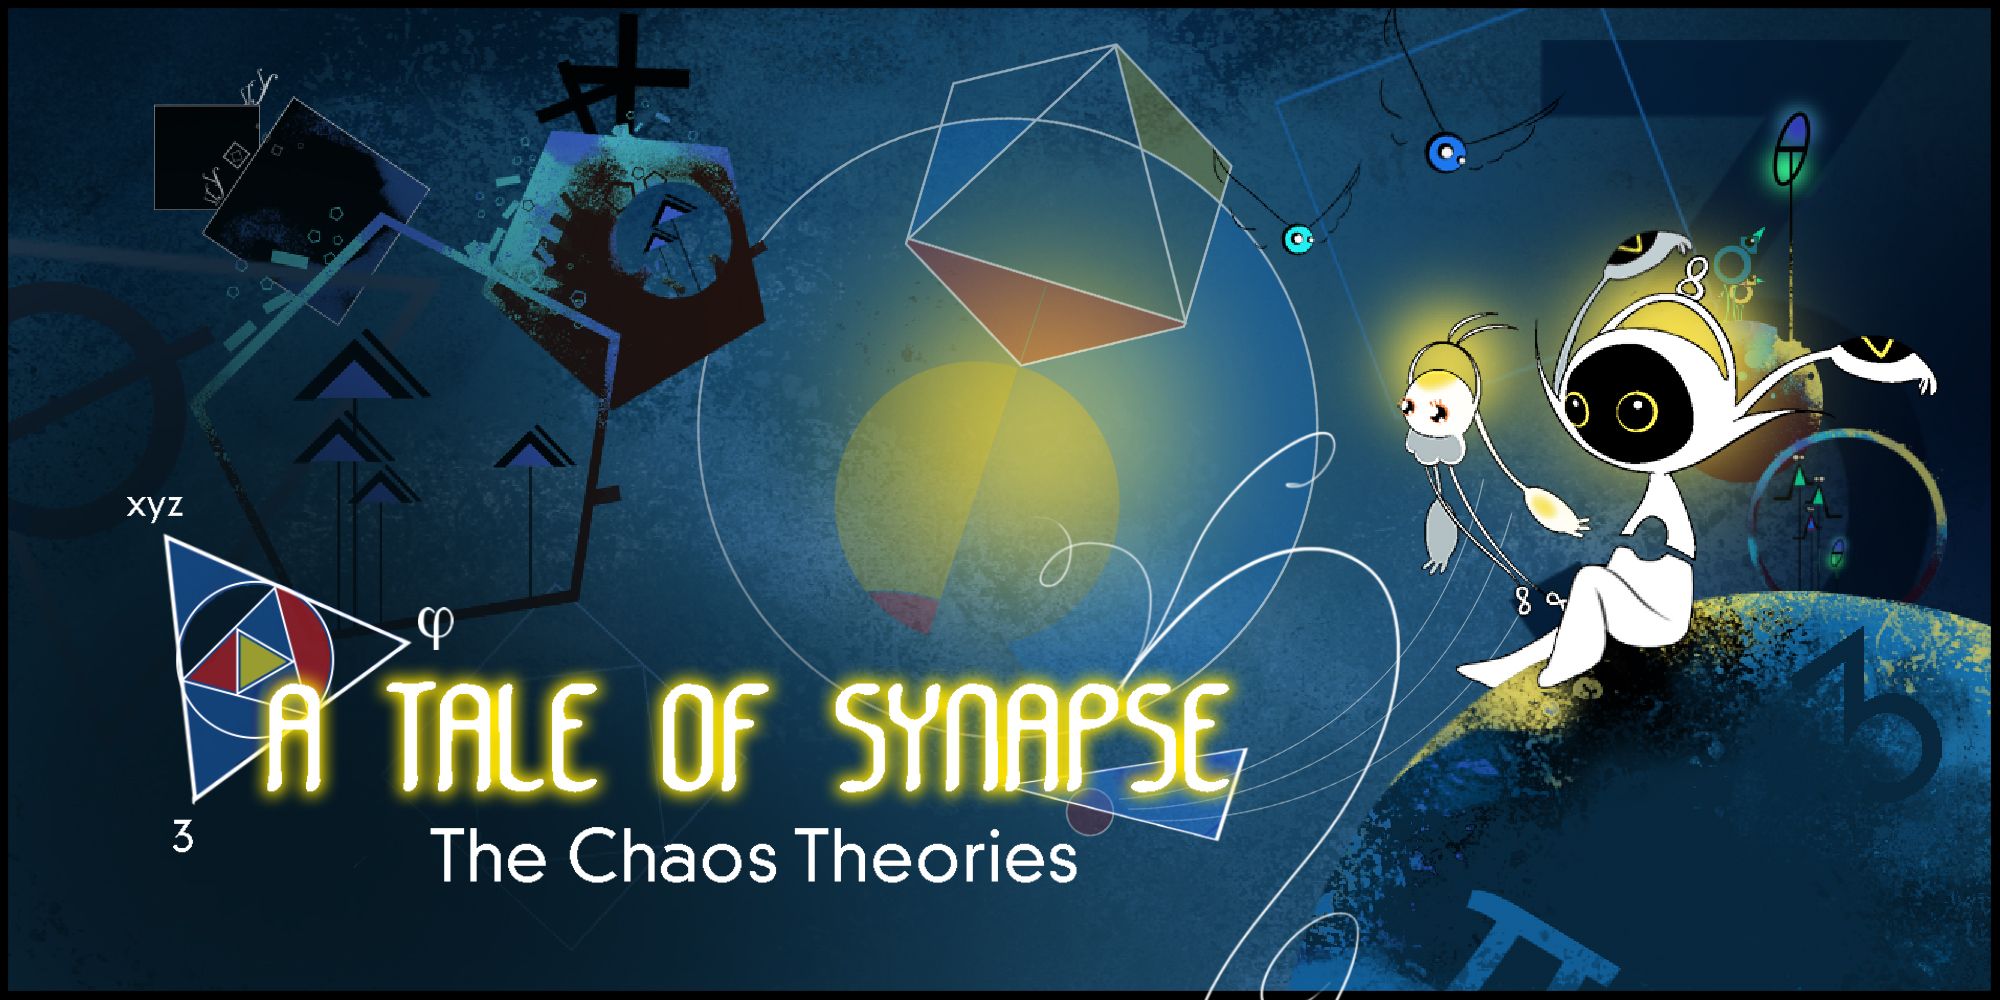 Una historia de sinapsis: revisión de las teorías del caos: rompecabezas bonitos pero desiguales